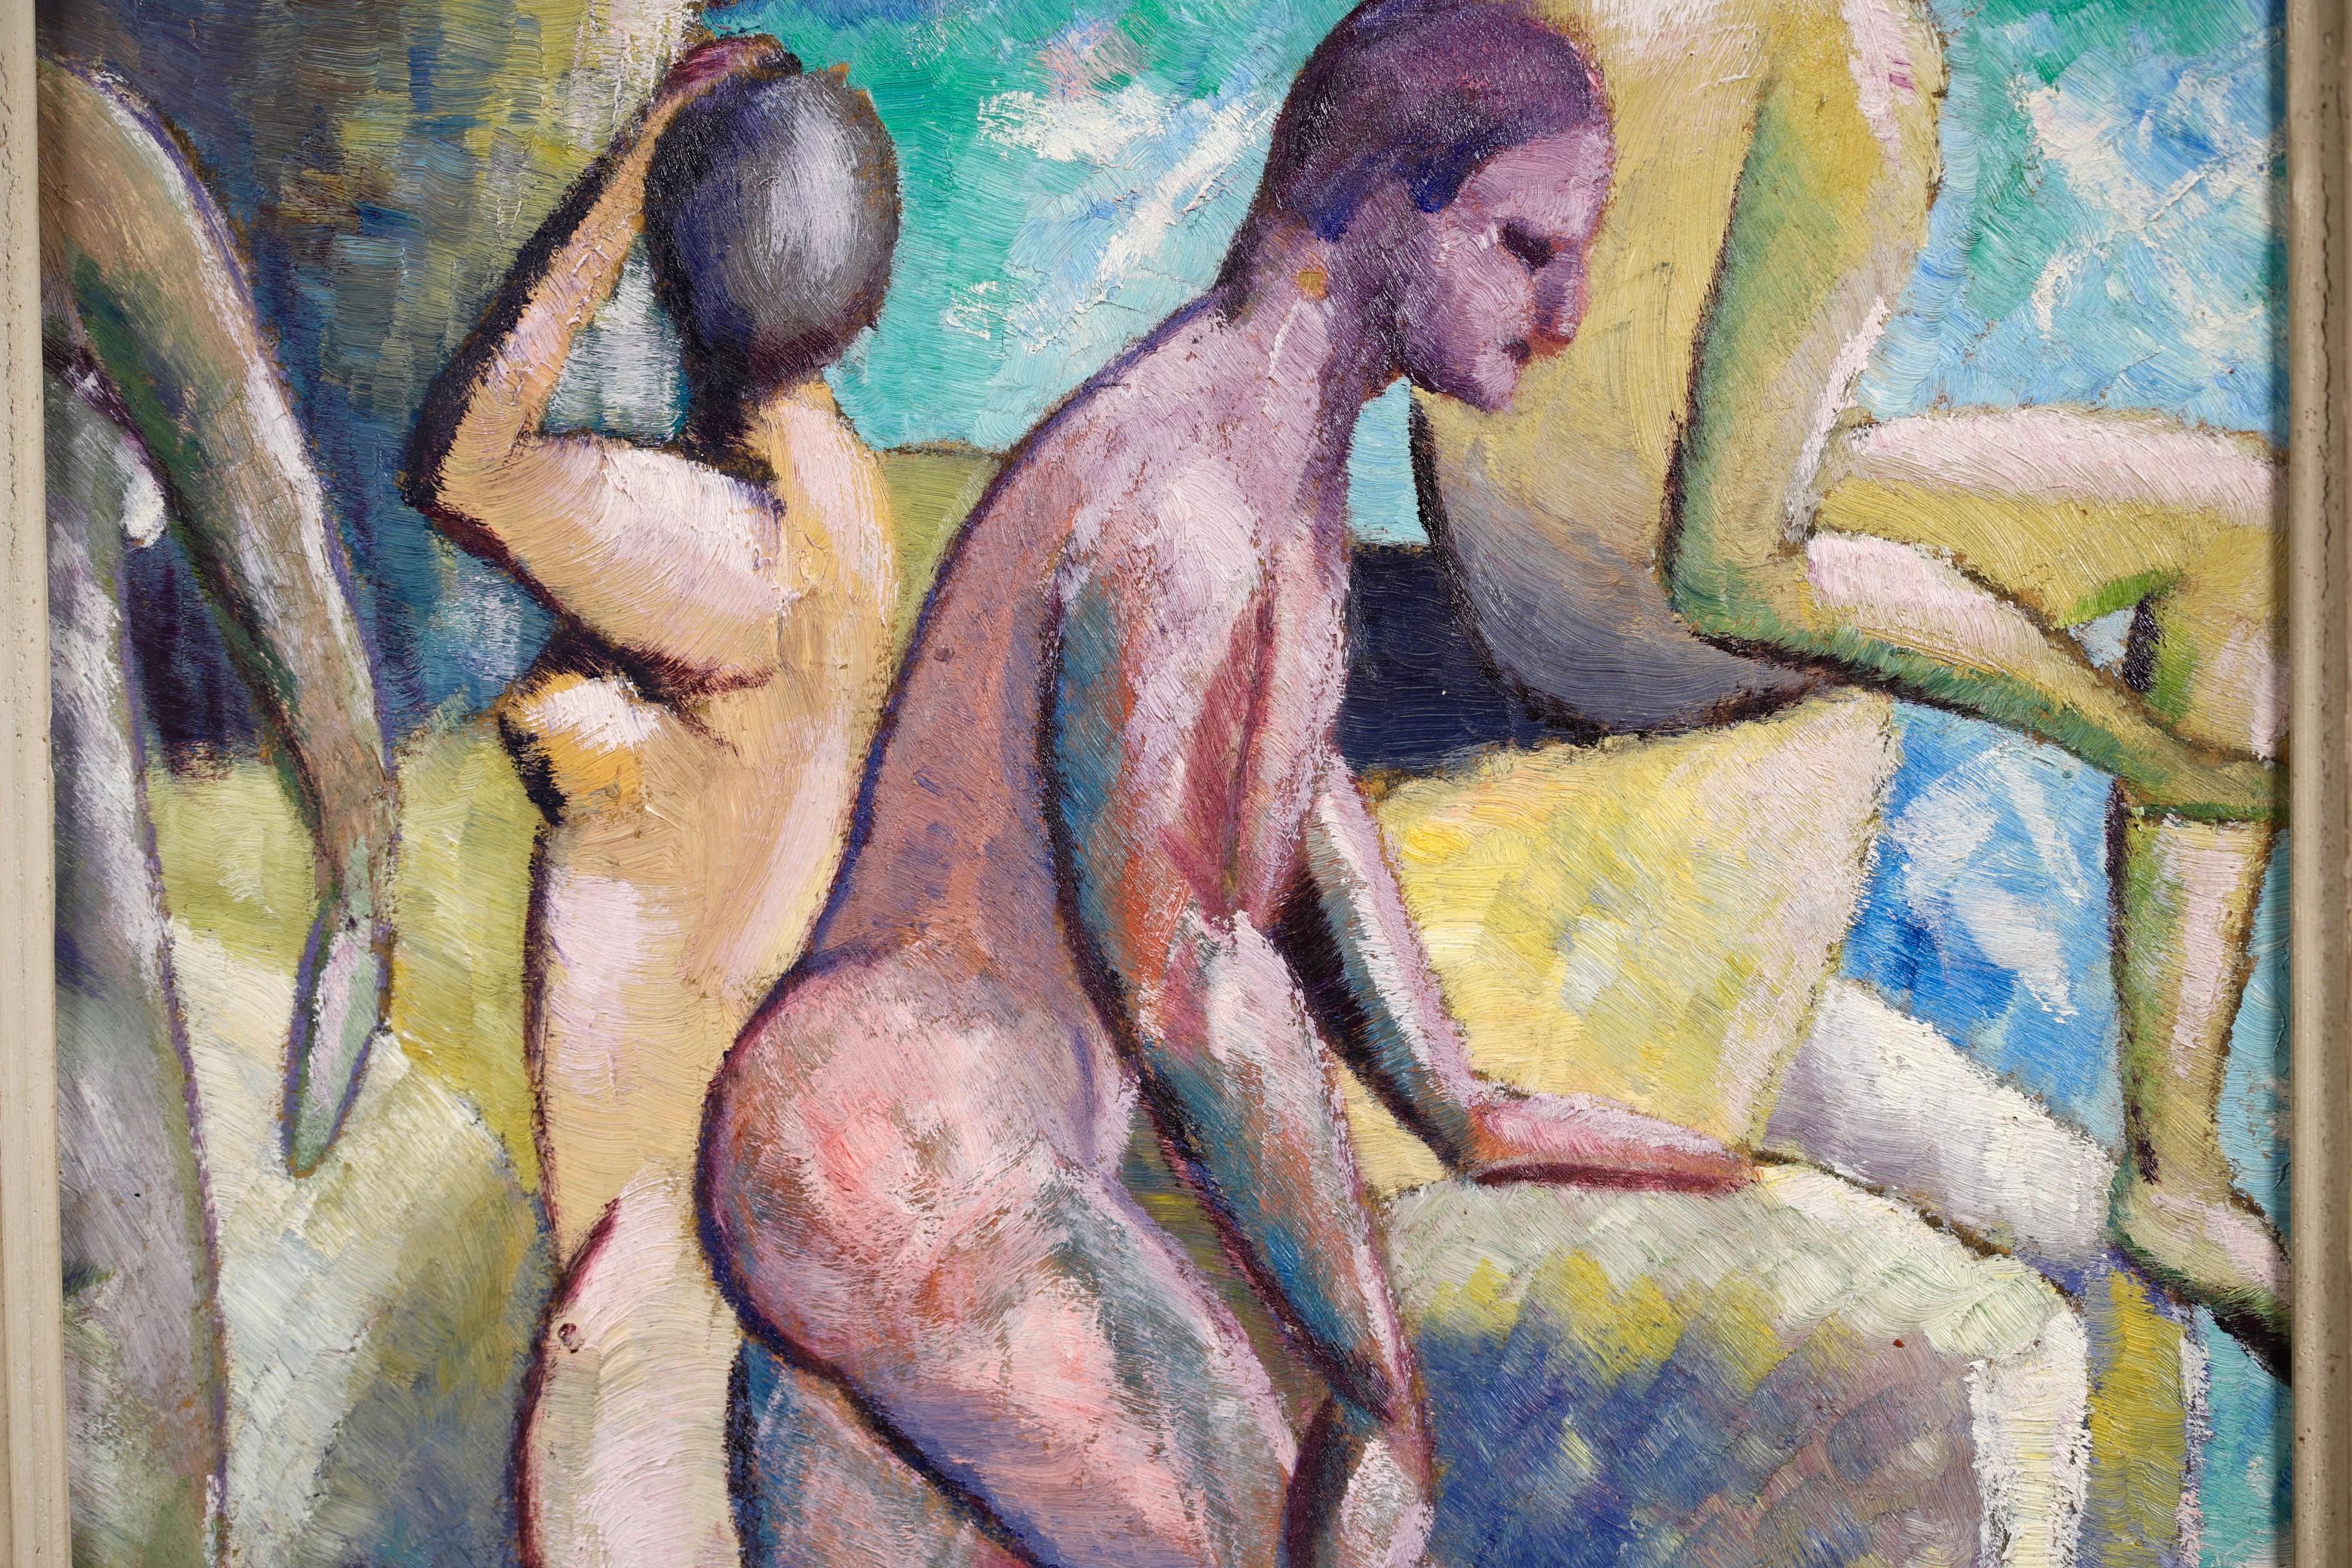 John Duncan Fergusson – Bathing at Eden Roc - Cubist Oil by Lois Hutton 1